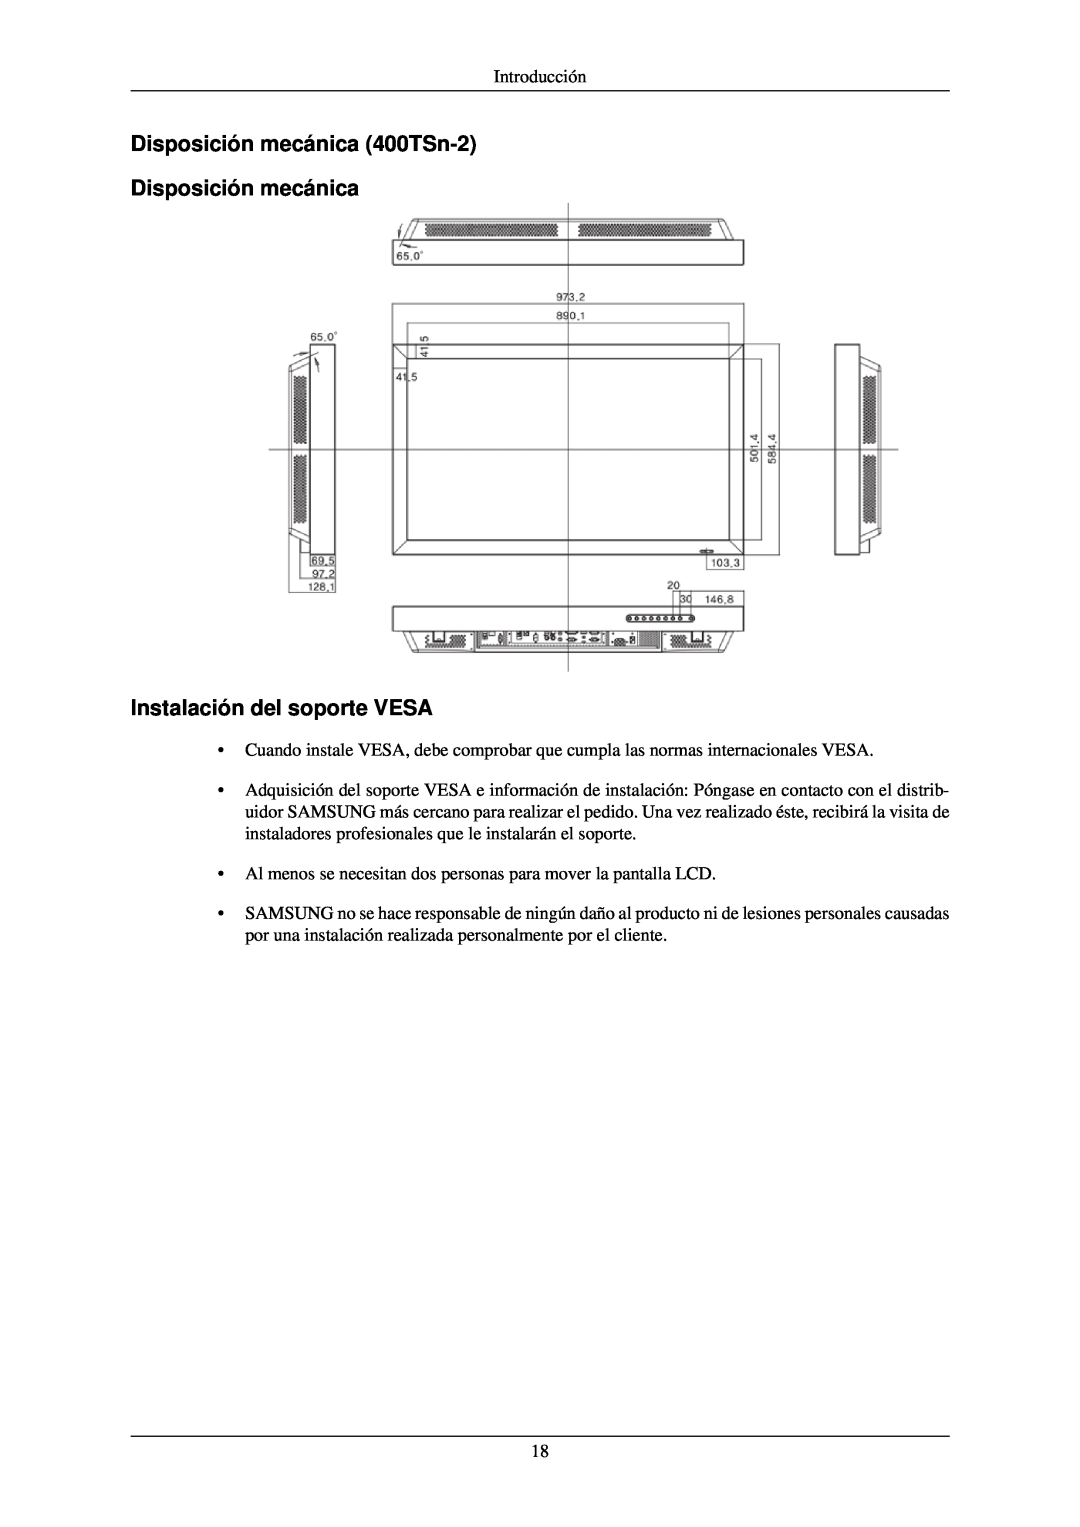 Samsung LH40TCUMBC/EN, LH40TCUMBG/EN manual Disposición mecánica 400TSn-2 Disposición mecánica, Instalación del soporte VESA 